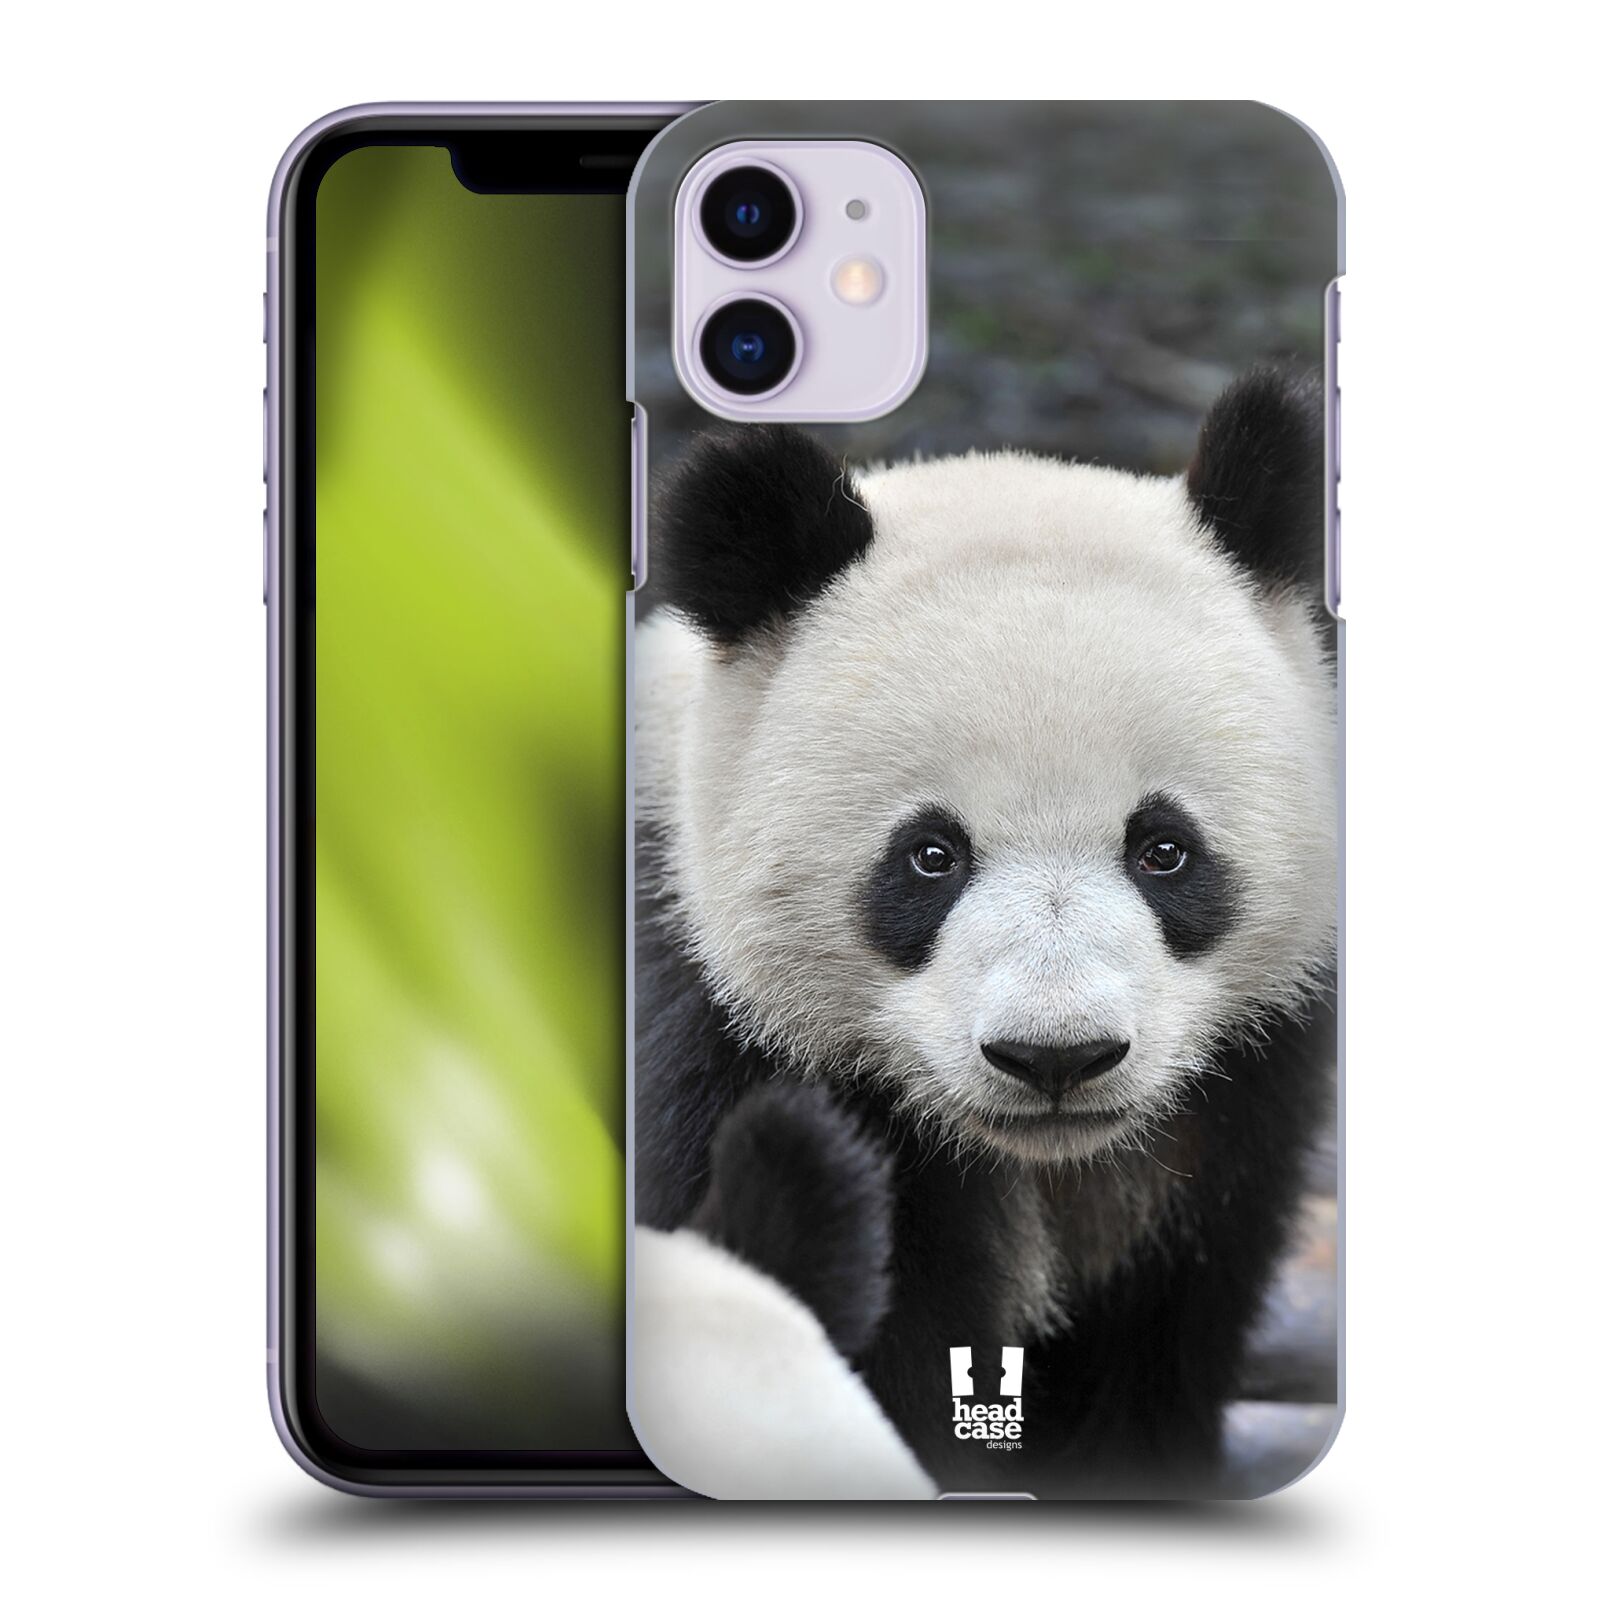 Pouzdro na mobil Apple Iphone 11 - HEAD CASE - vzor Divočina, Divoký život a zvířata foto MEDVĚD PANDA